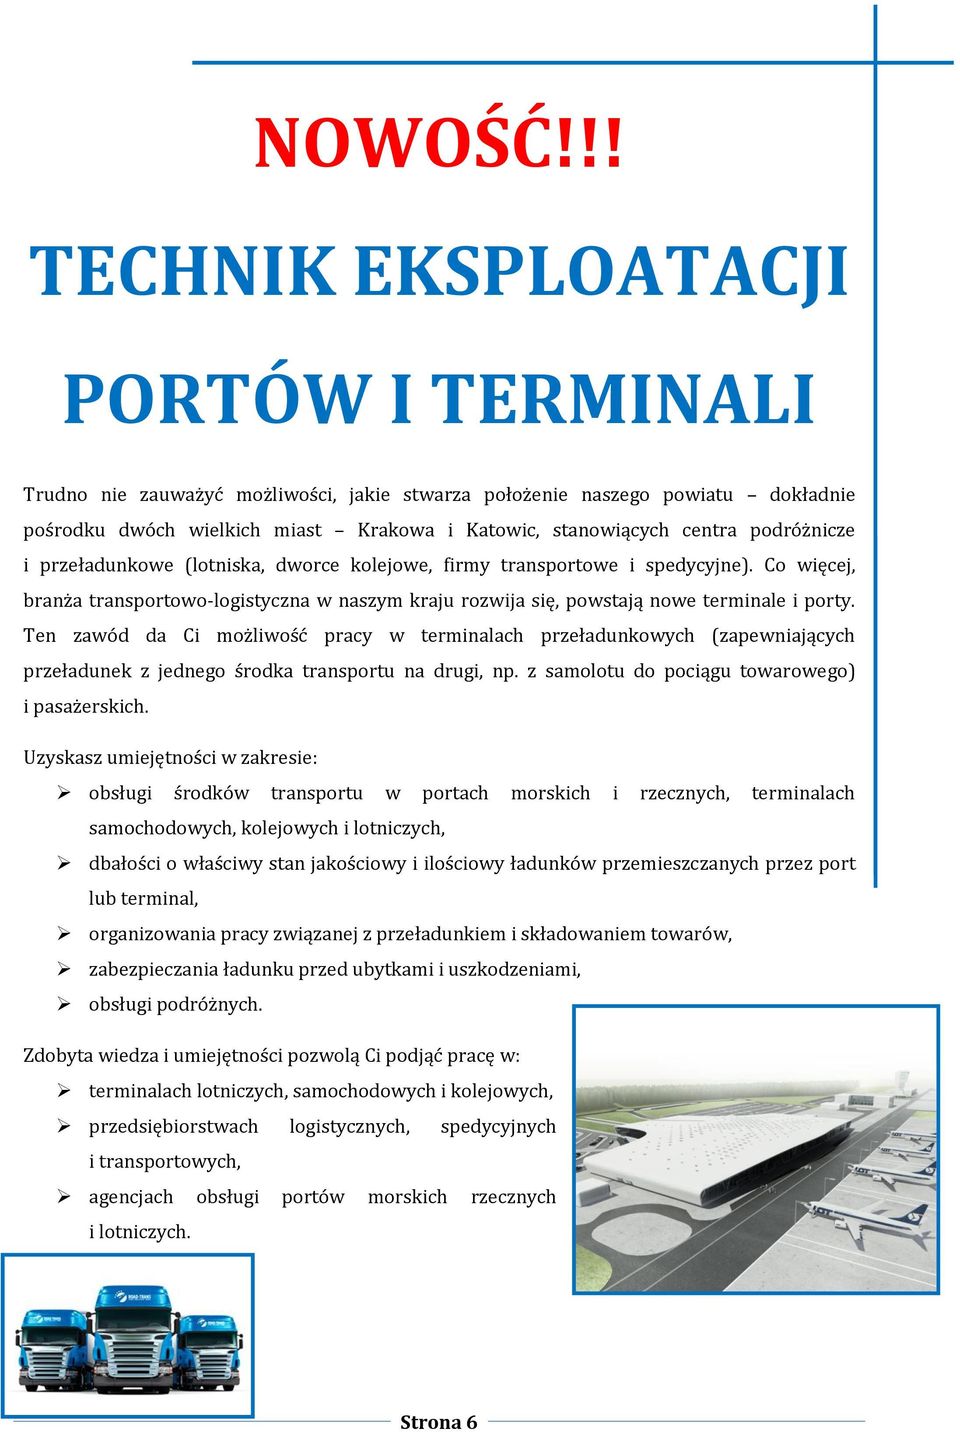 podróżnicze i przeładunkowe (lotniska, dworce kolejowe, firmy transportowe i spedycyjne). Co więcej, branża transportowo-logistyczna w naszym kraju rozwija się, powstają nowe terminale i porty.